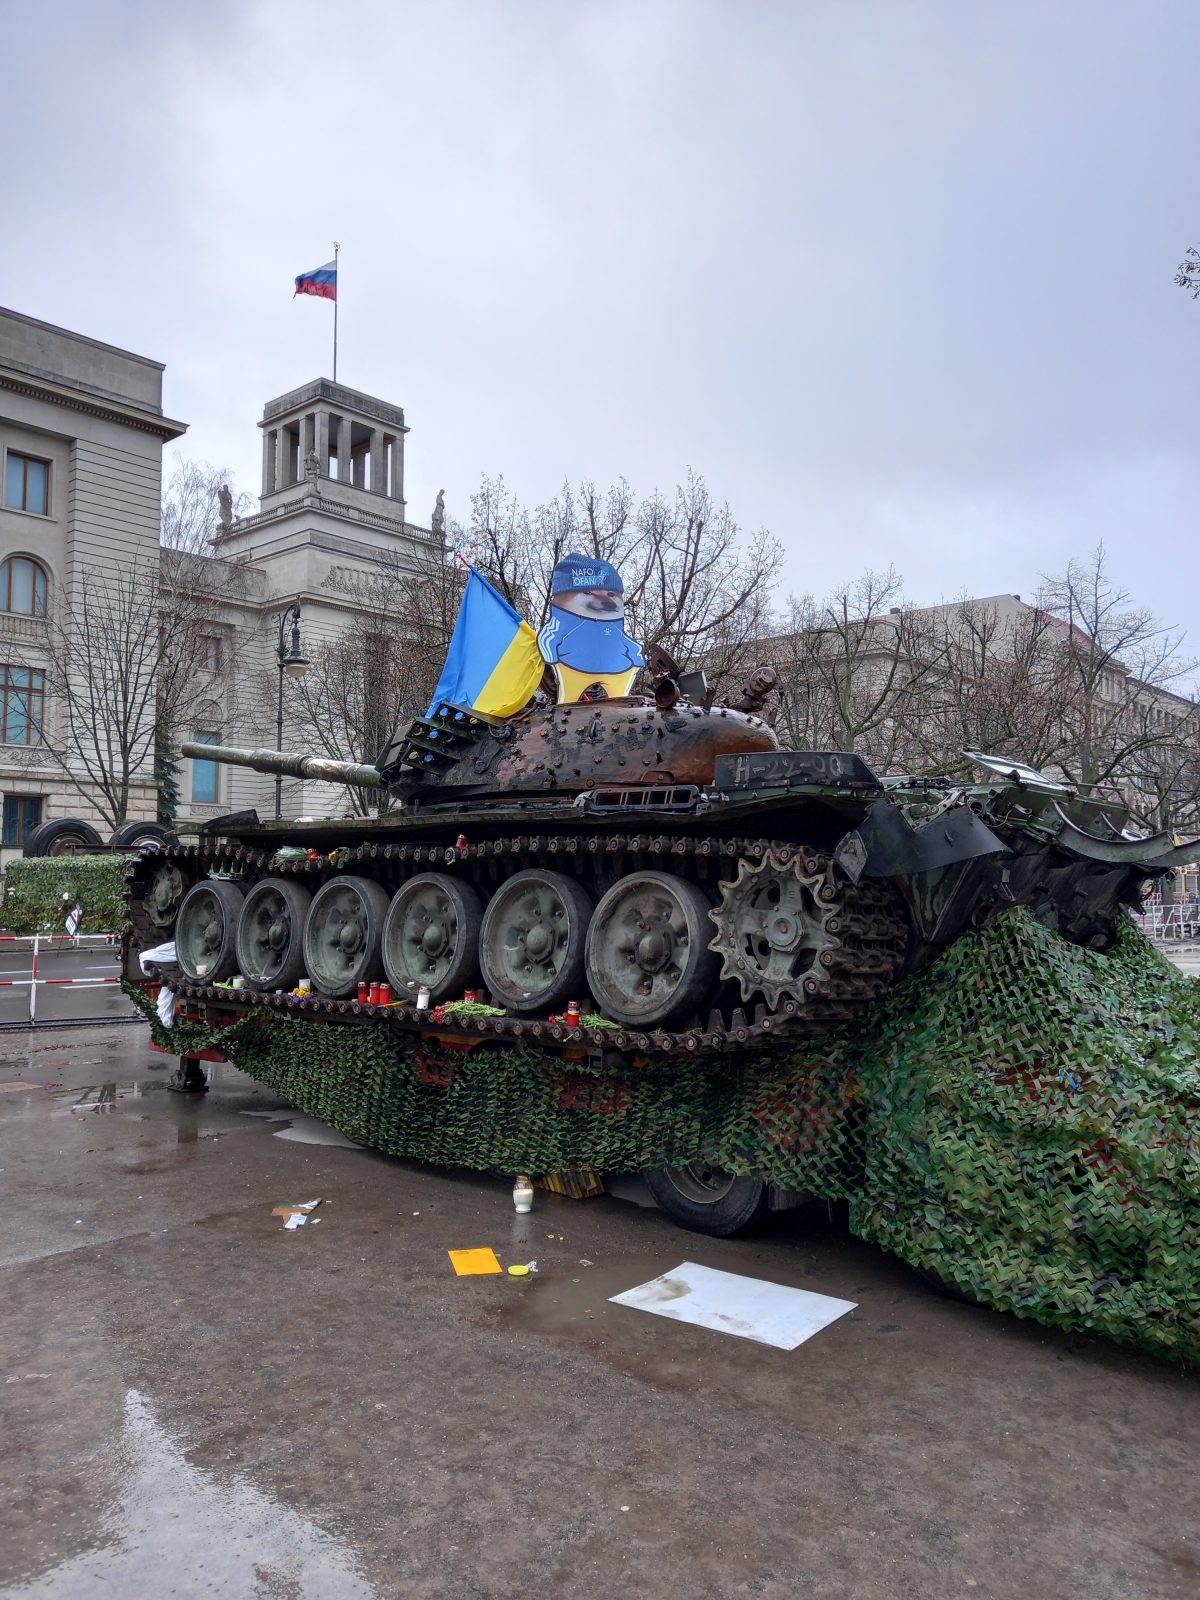 Panzerwrack vor der Russischen Botschaft